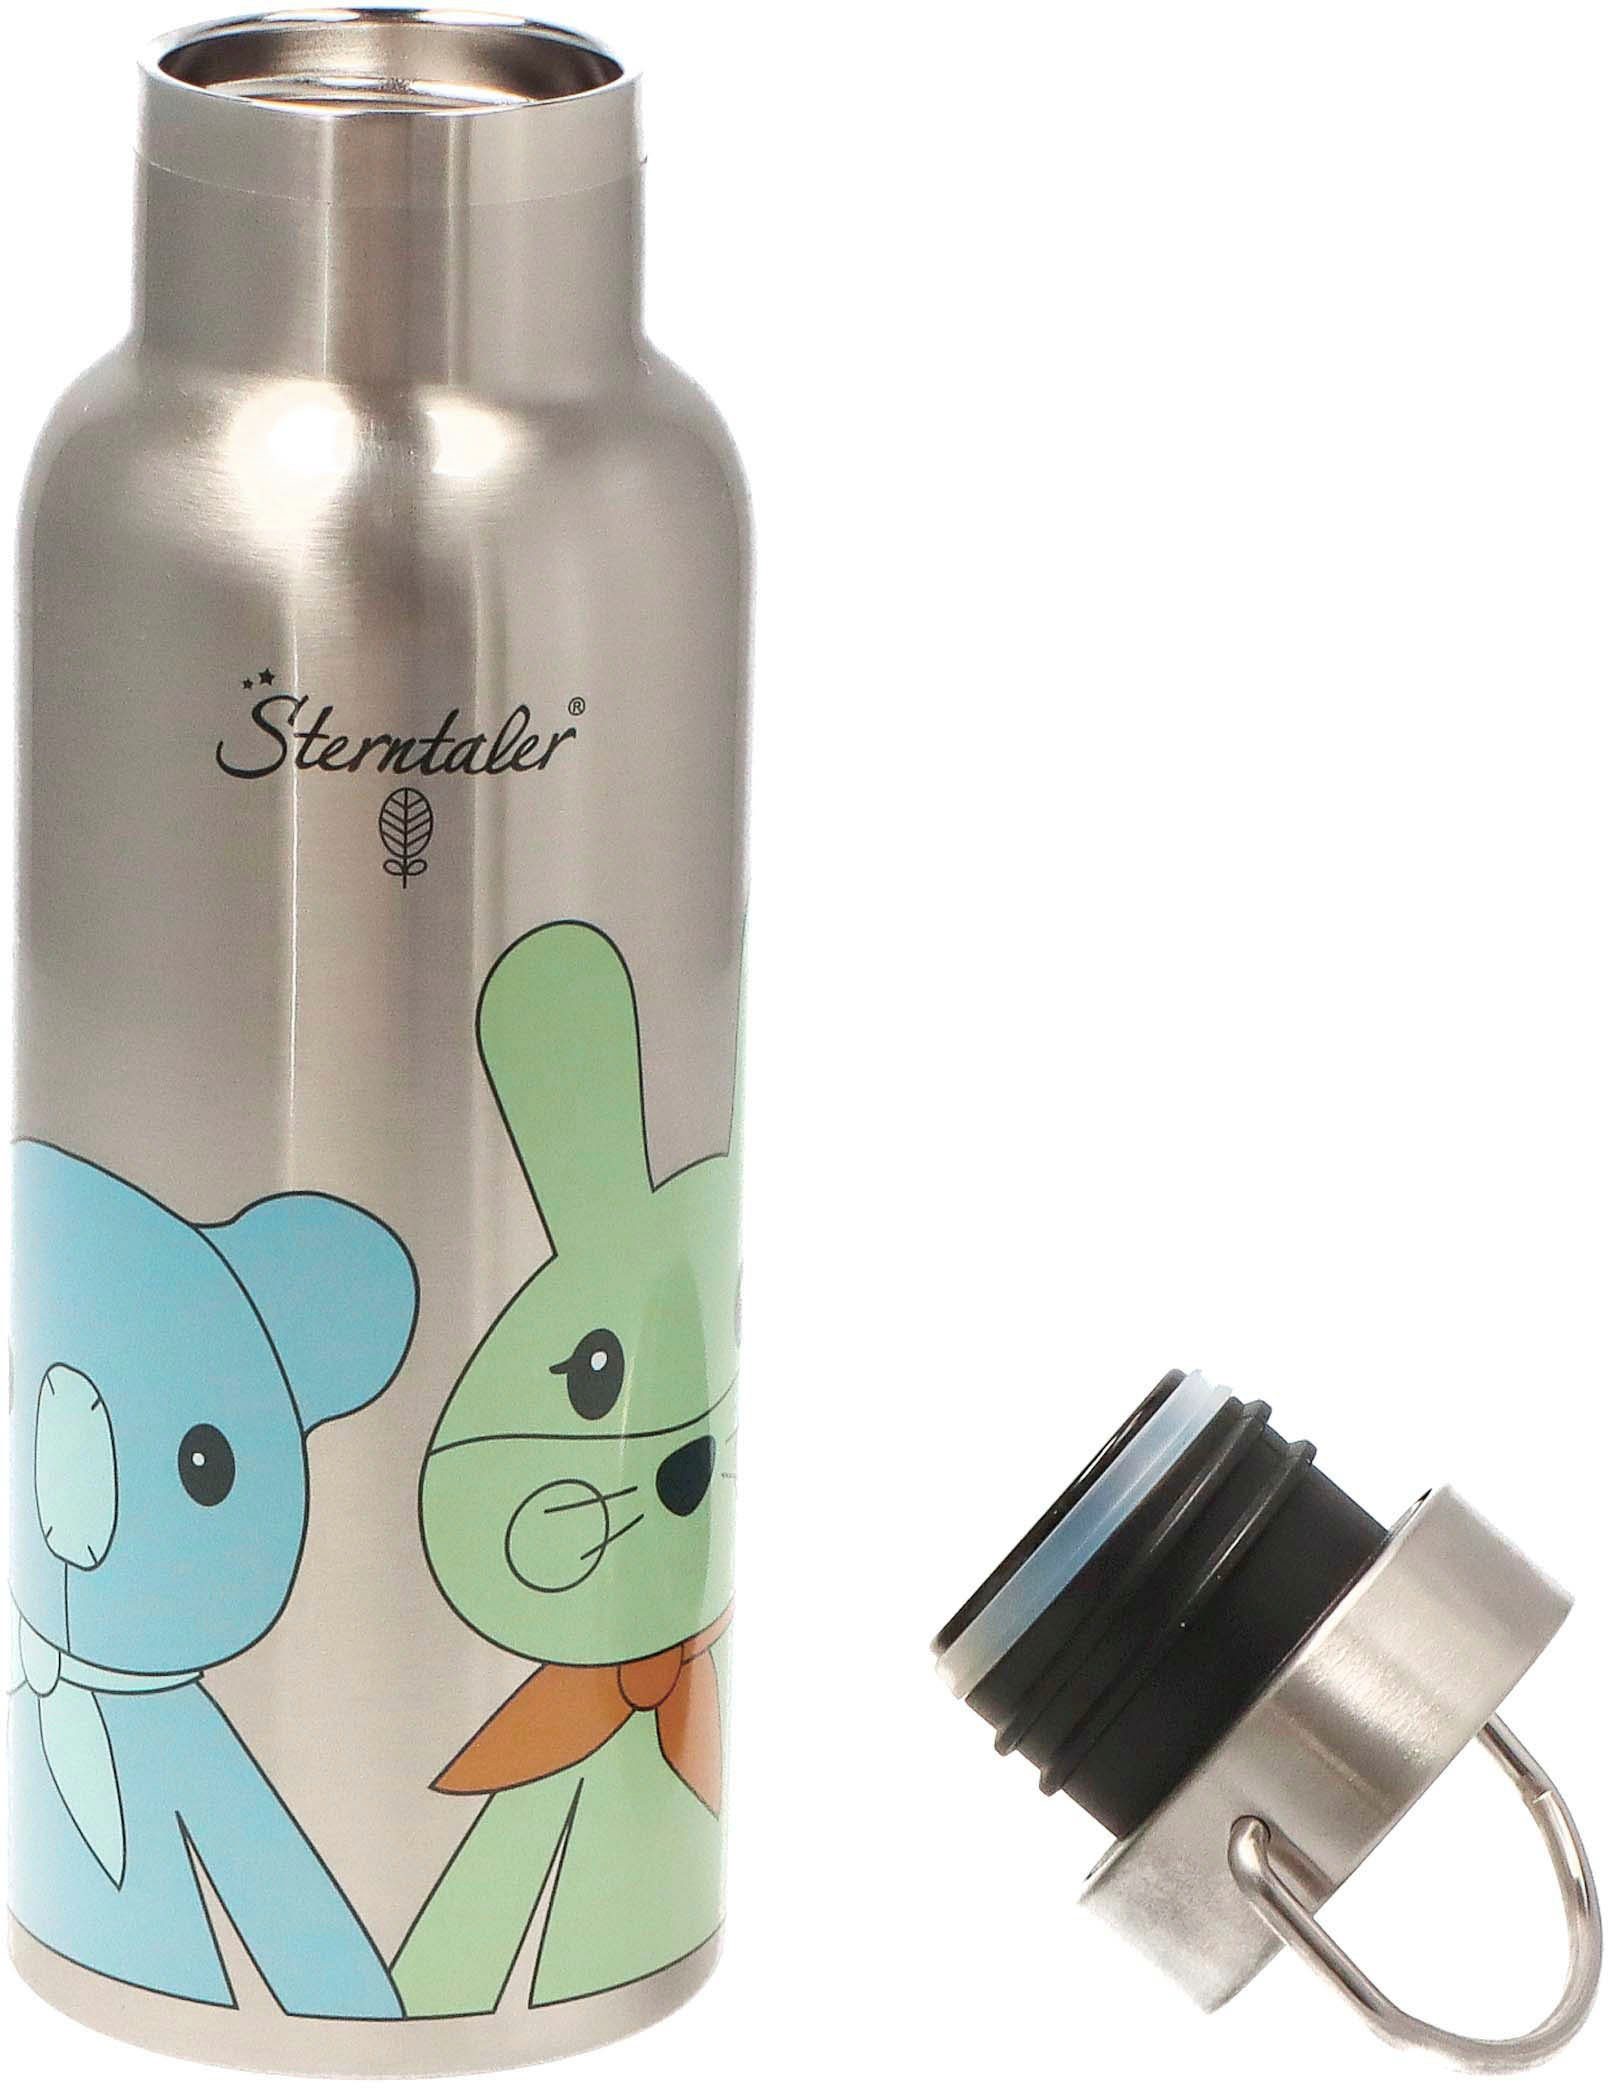 Sterntaler® Trinkflasche Stay true to nature, Kinni+Kalla, für Kinder